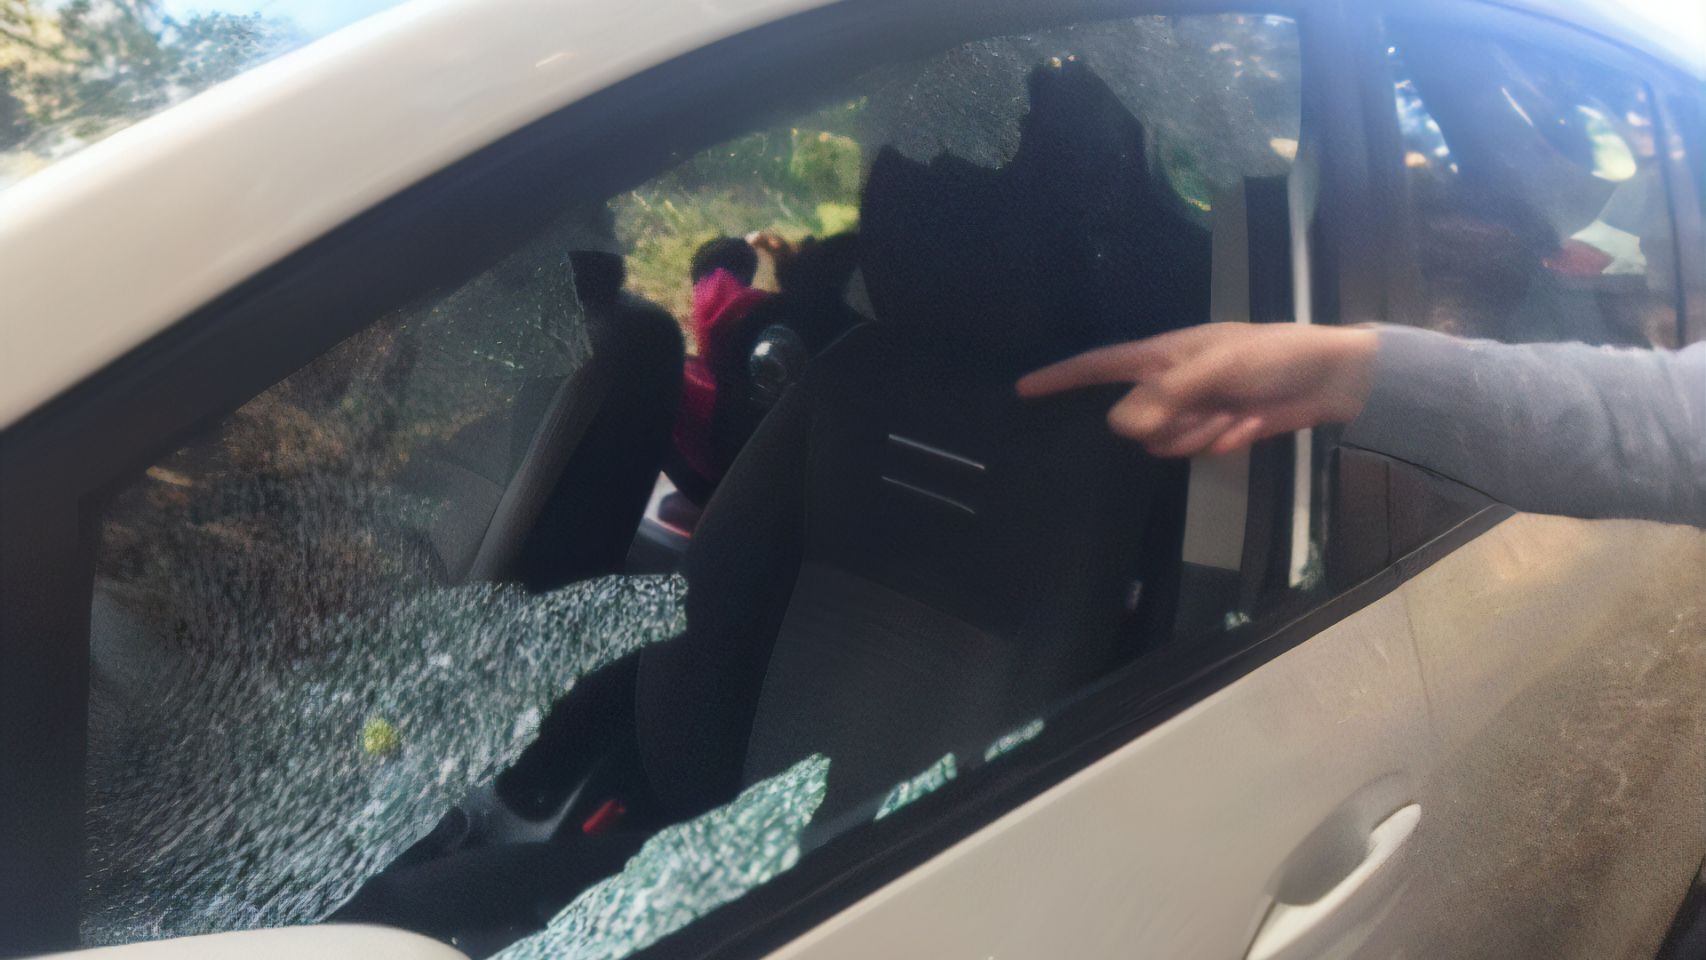 La ventana rota de uno de los coches en los que robaron en Seixo Branco, Oleiros (A Coruña).